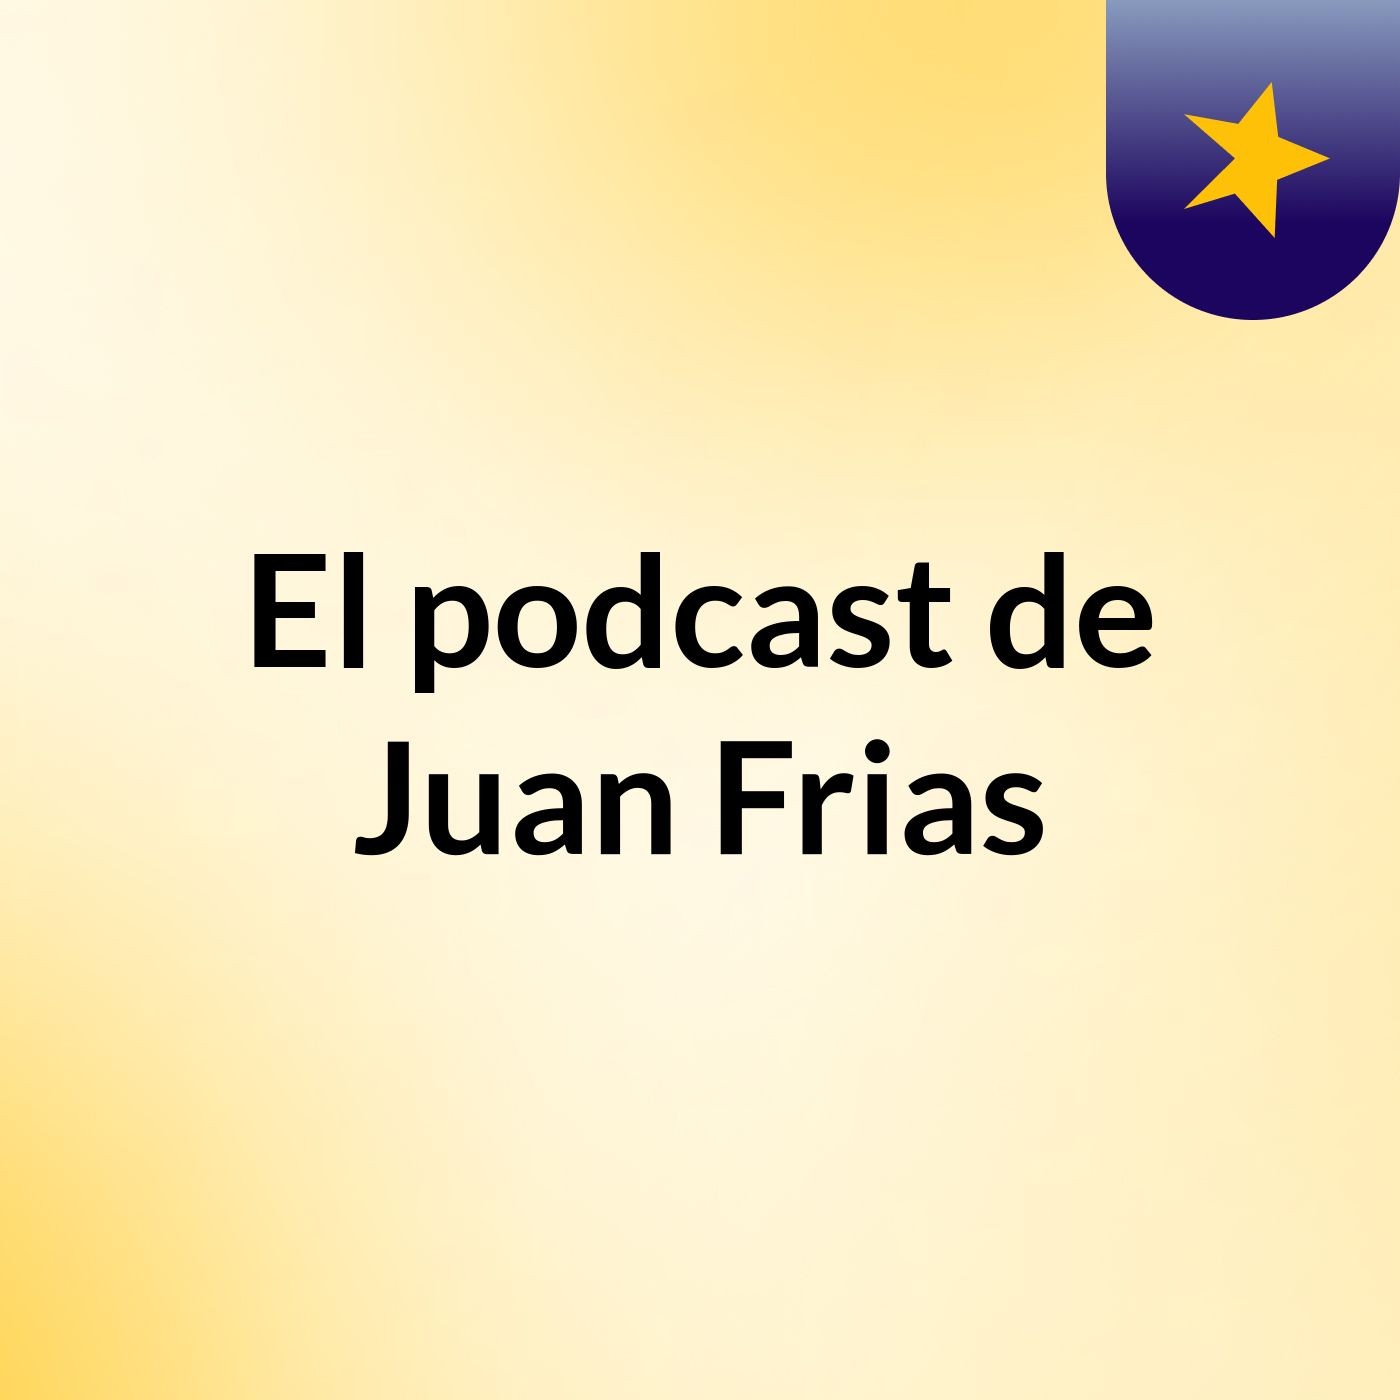 El podcast de Juan Frias